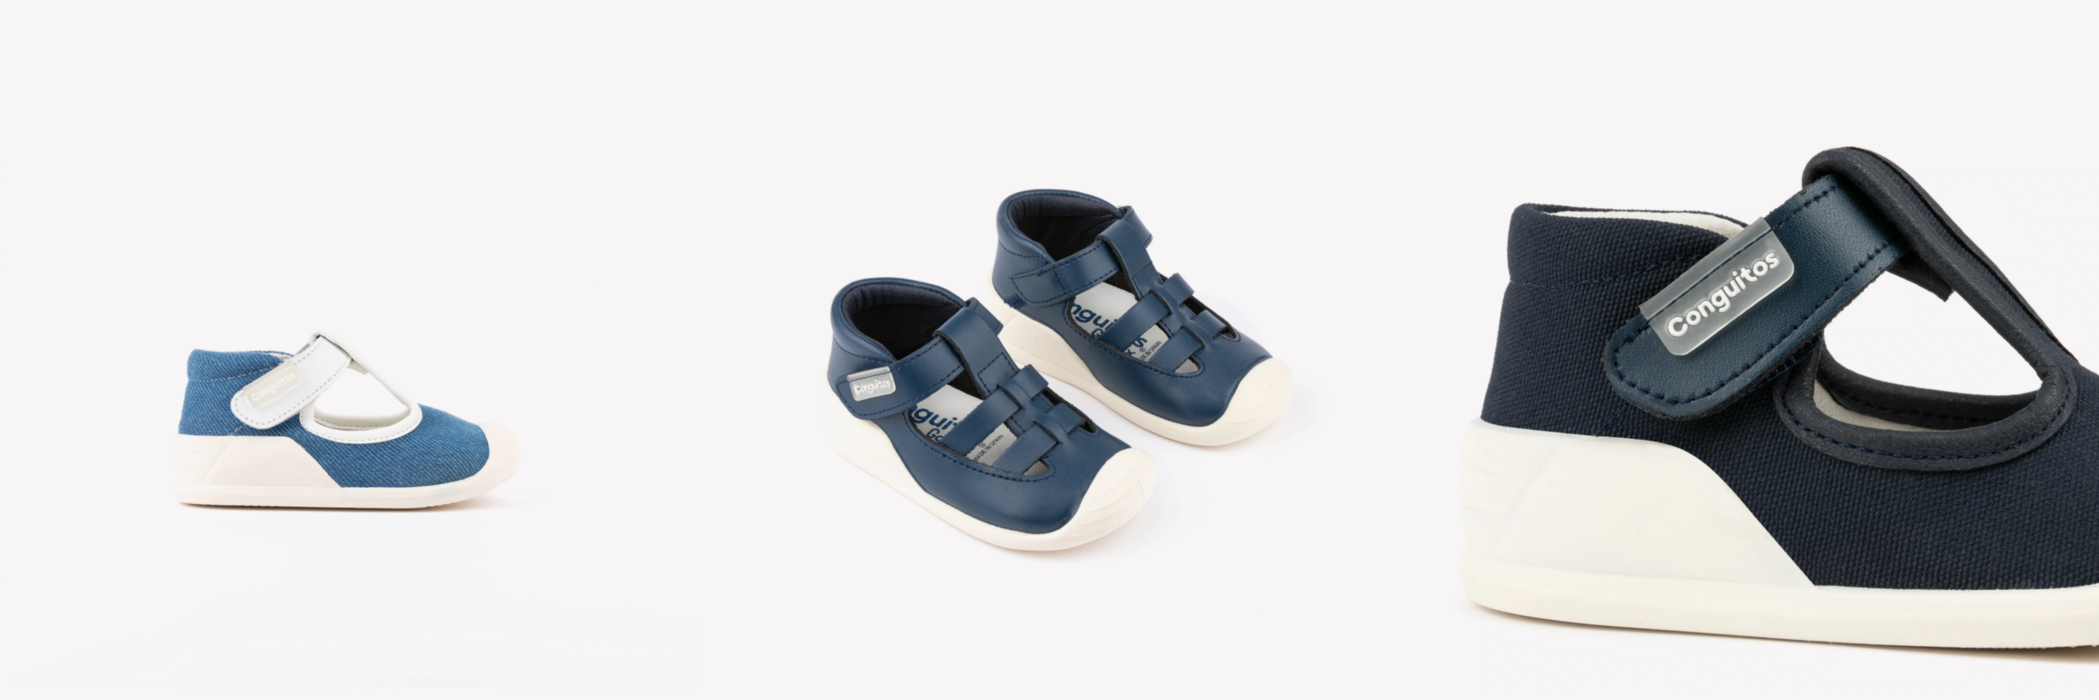 Tienda online calzado respetuoso para bebés y sus primeros pasos